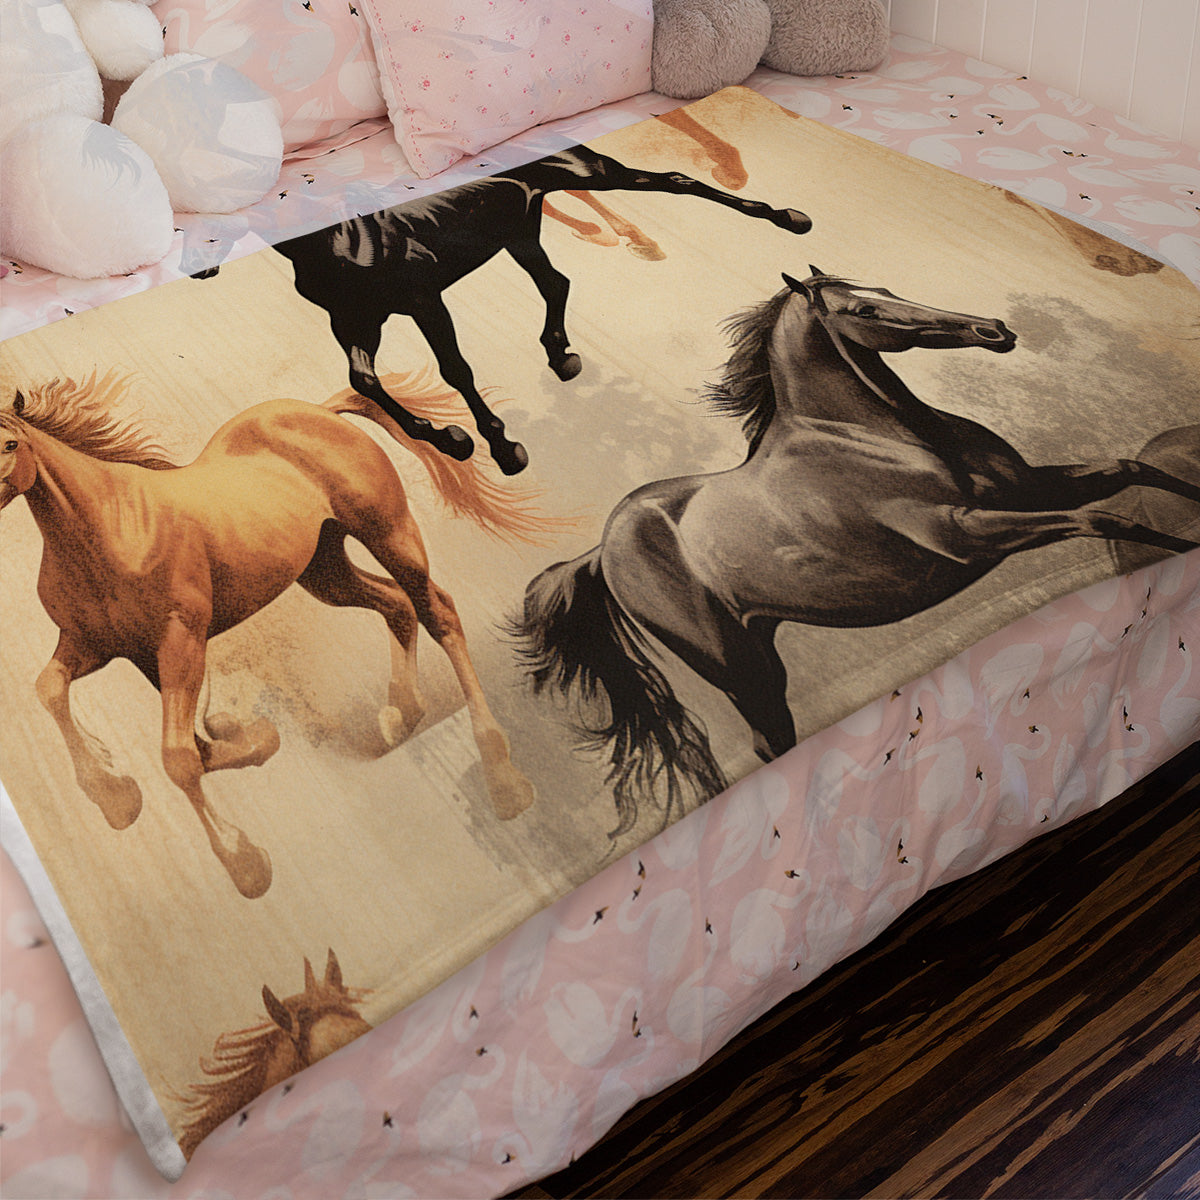 Vintage Horse Equestrian Ephemera Velveteen Plush Blanket Gift for Horse lover, Farm House Decor, Equine Art, Antique Horse Decor, Equestrian Gifts 06